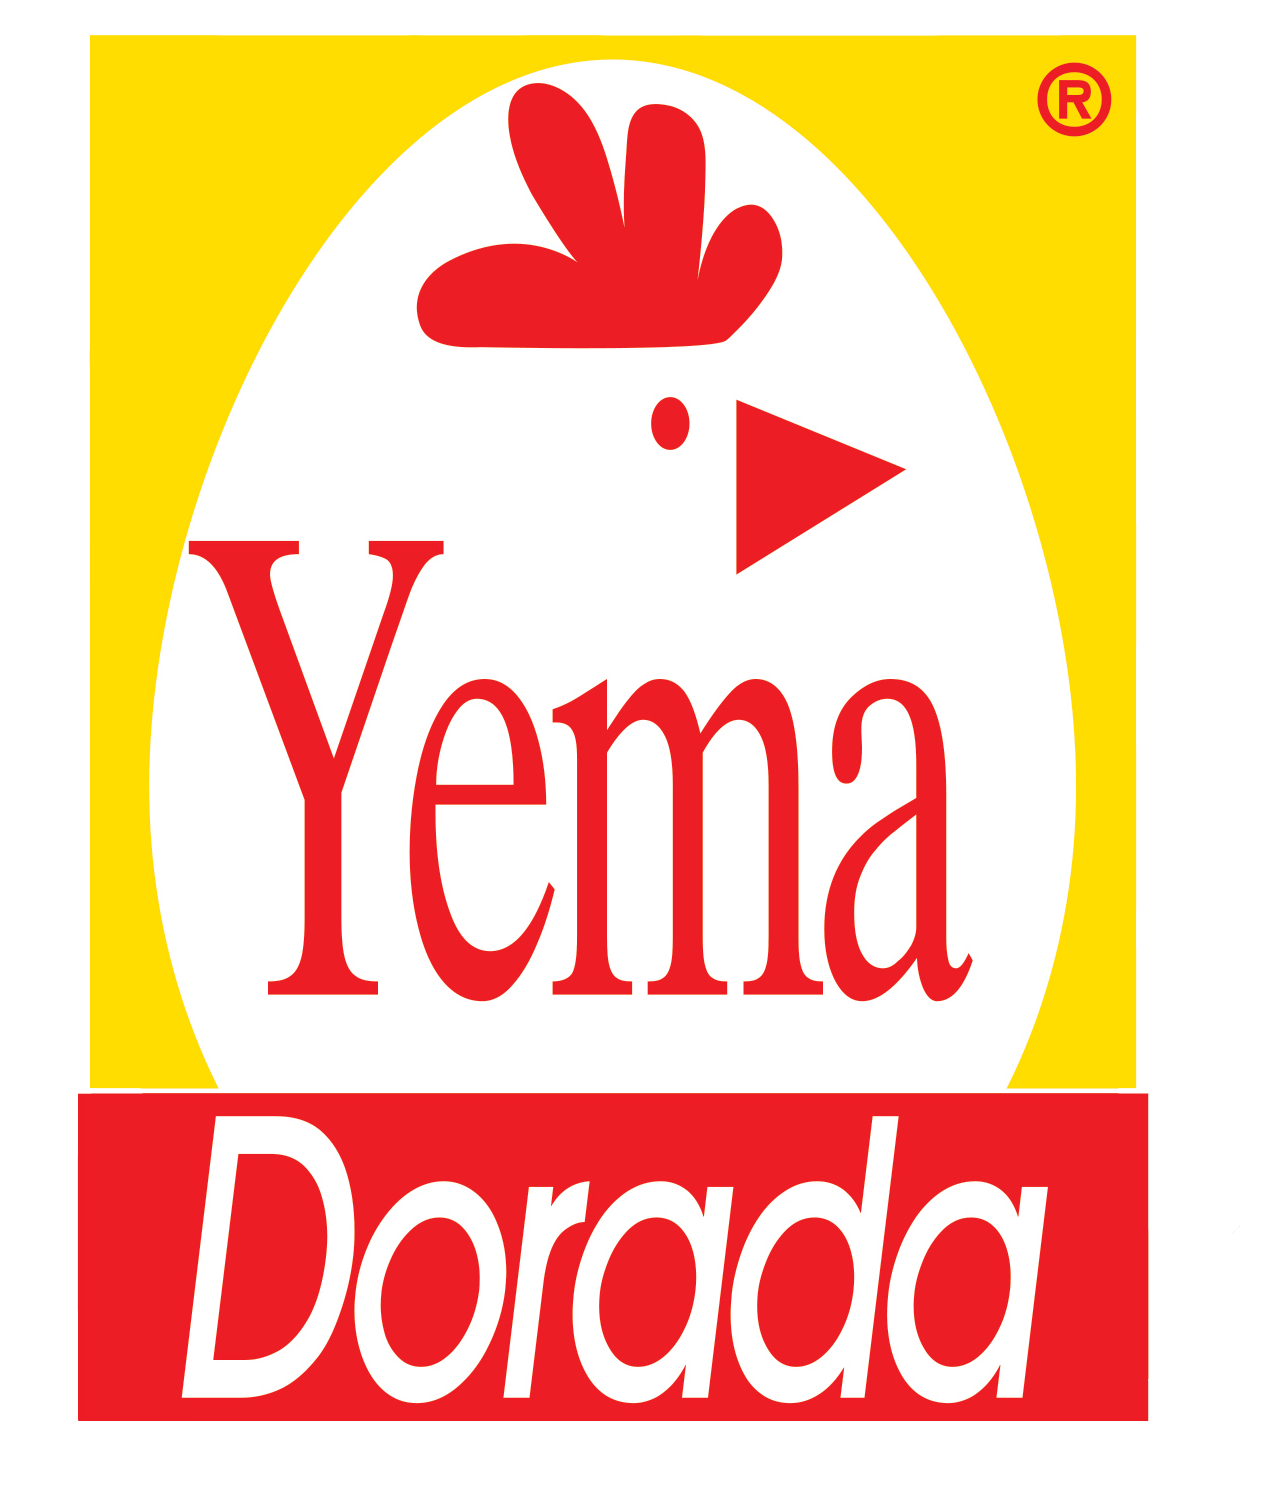 Yema Dorada